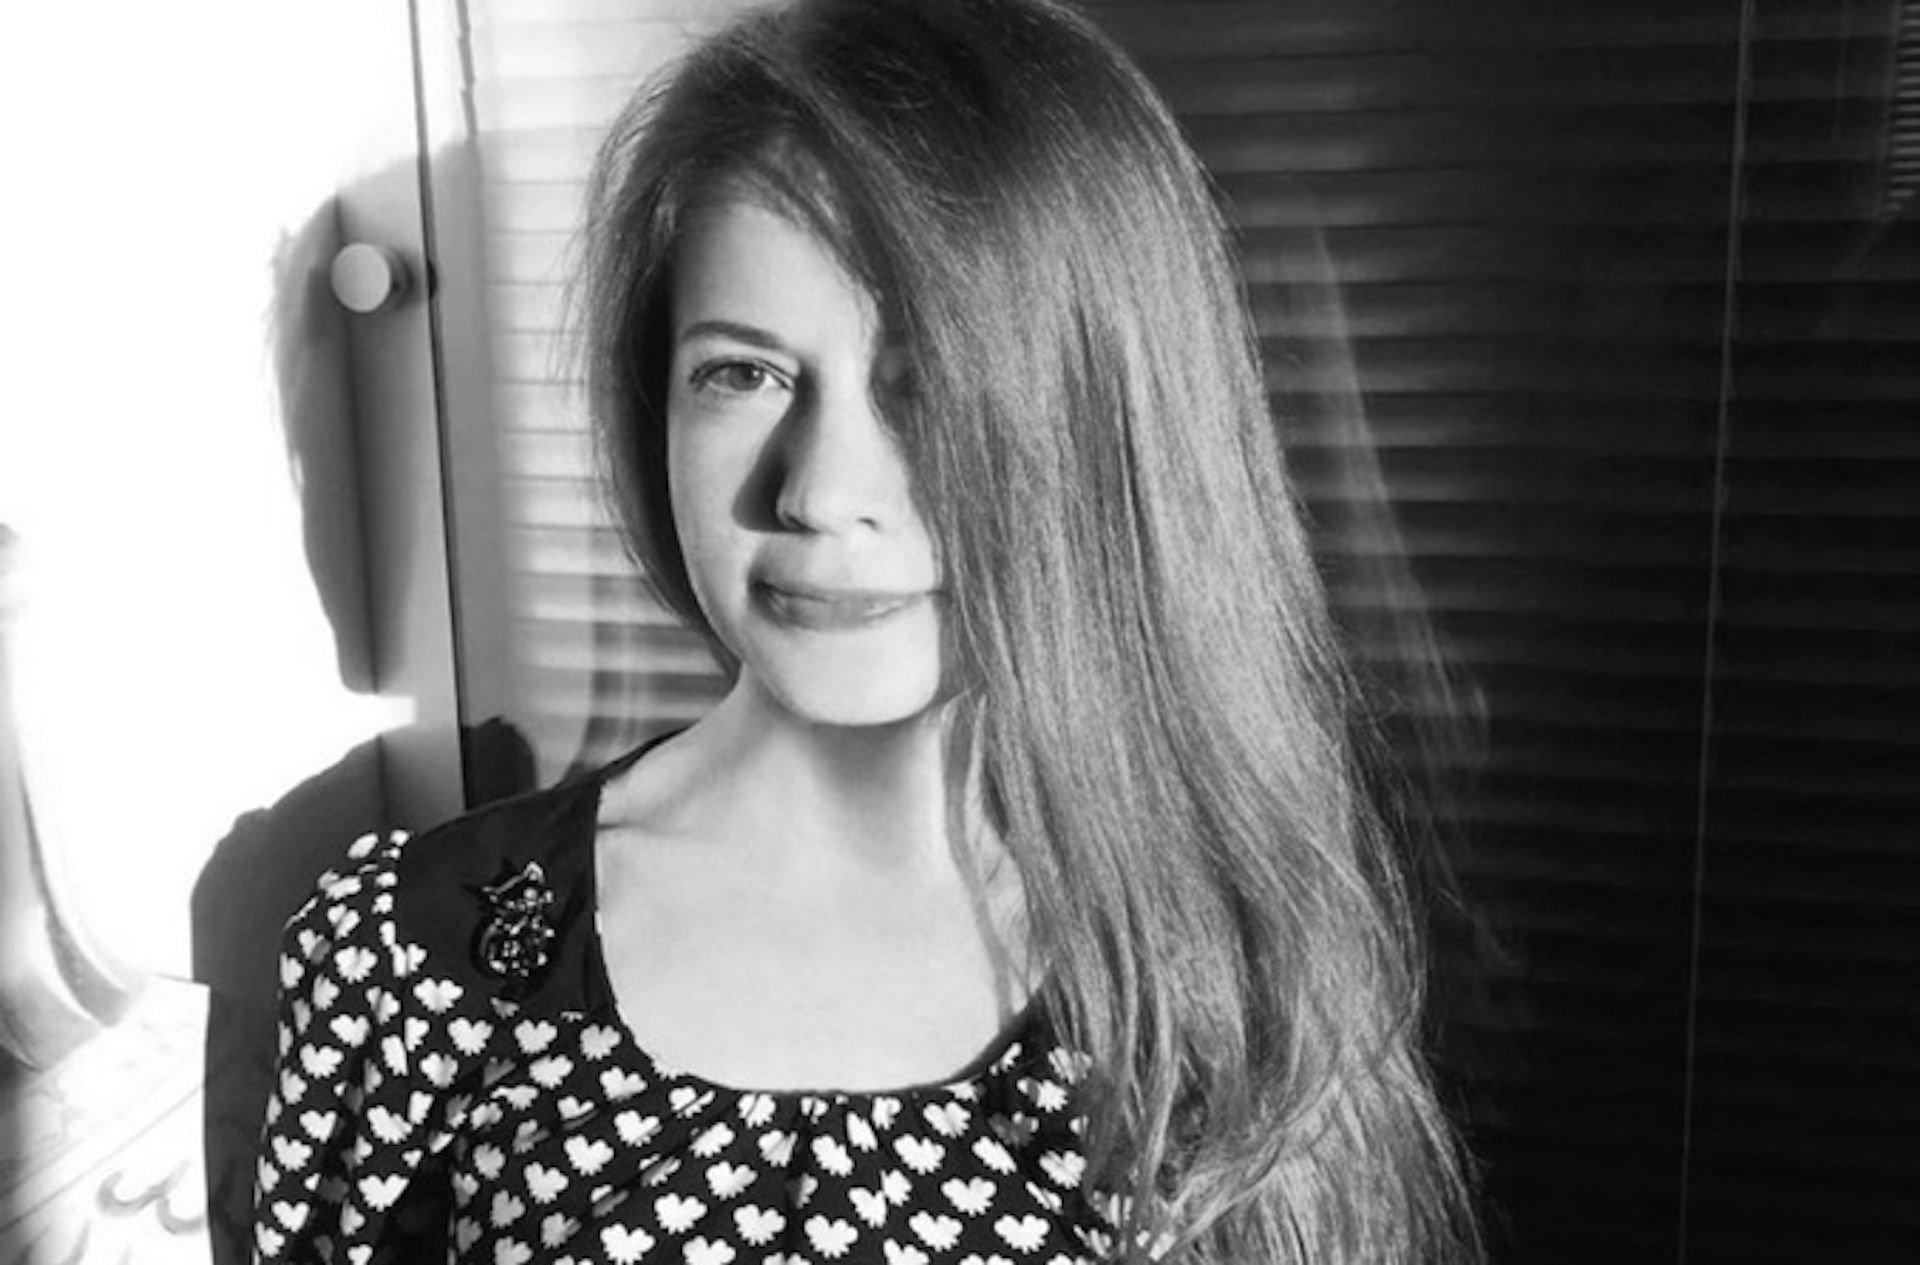 Nie żyje dziennikarka Oksana Baulina, zginęła w czasie pracy w Kijowie 